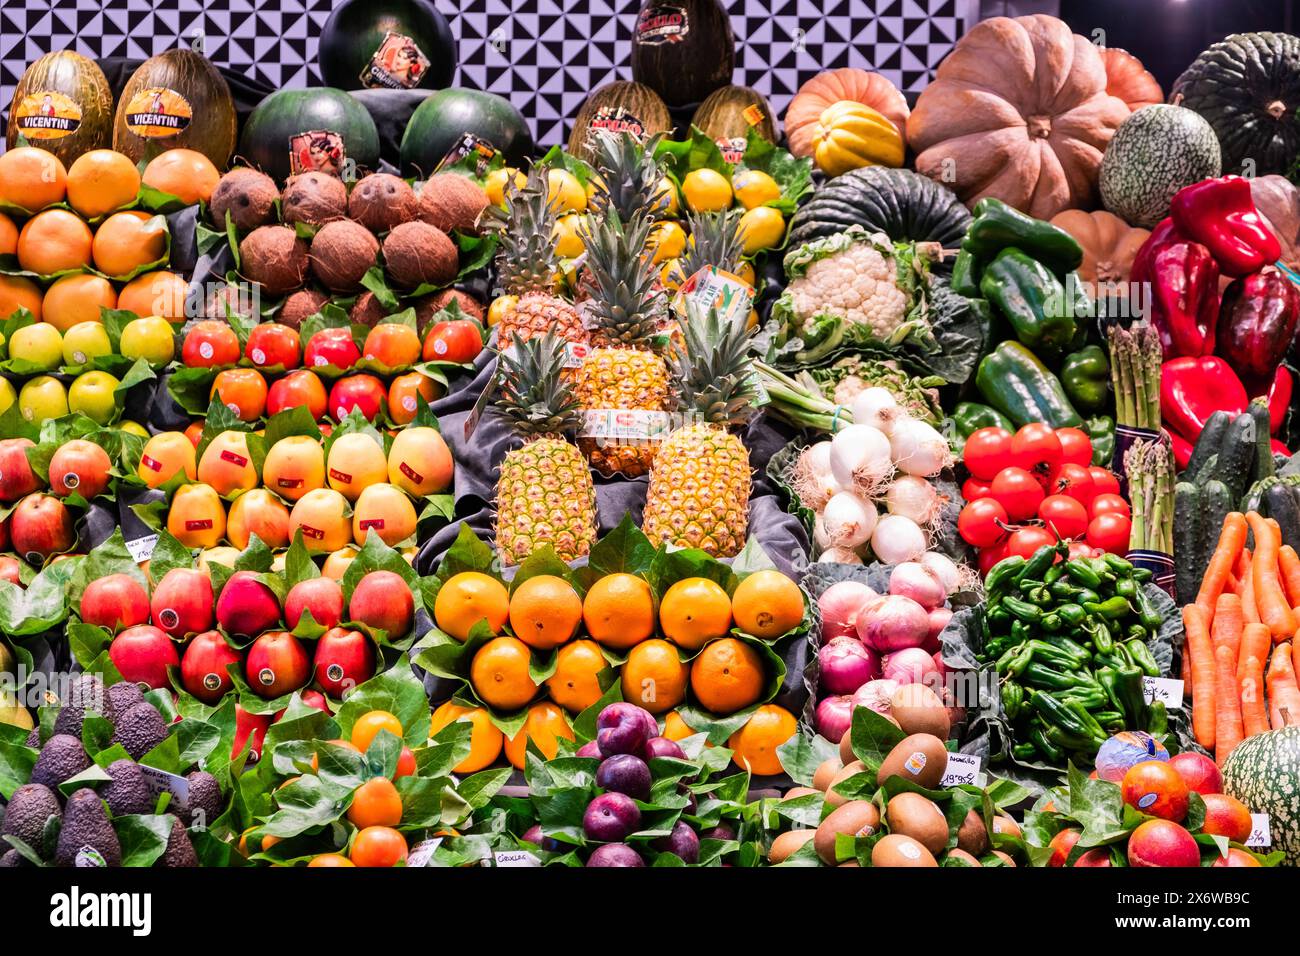 Frisches Obst und Gemüse an einem Markstand des Mercado de la Boqueria, berühmter Markt an den Ramblas a Barcellona, Spanien Barcelona Katalonien Span Foto Stock